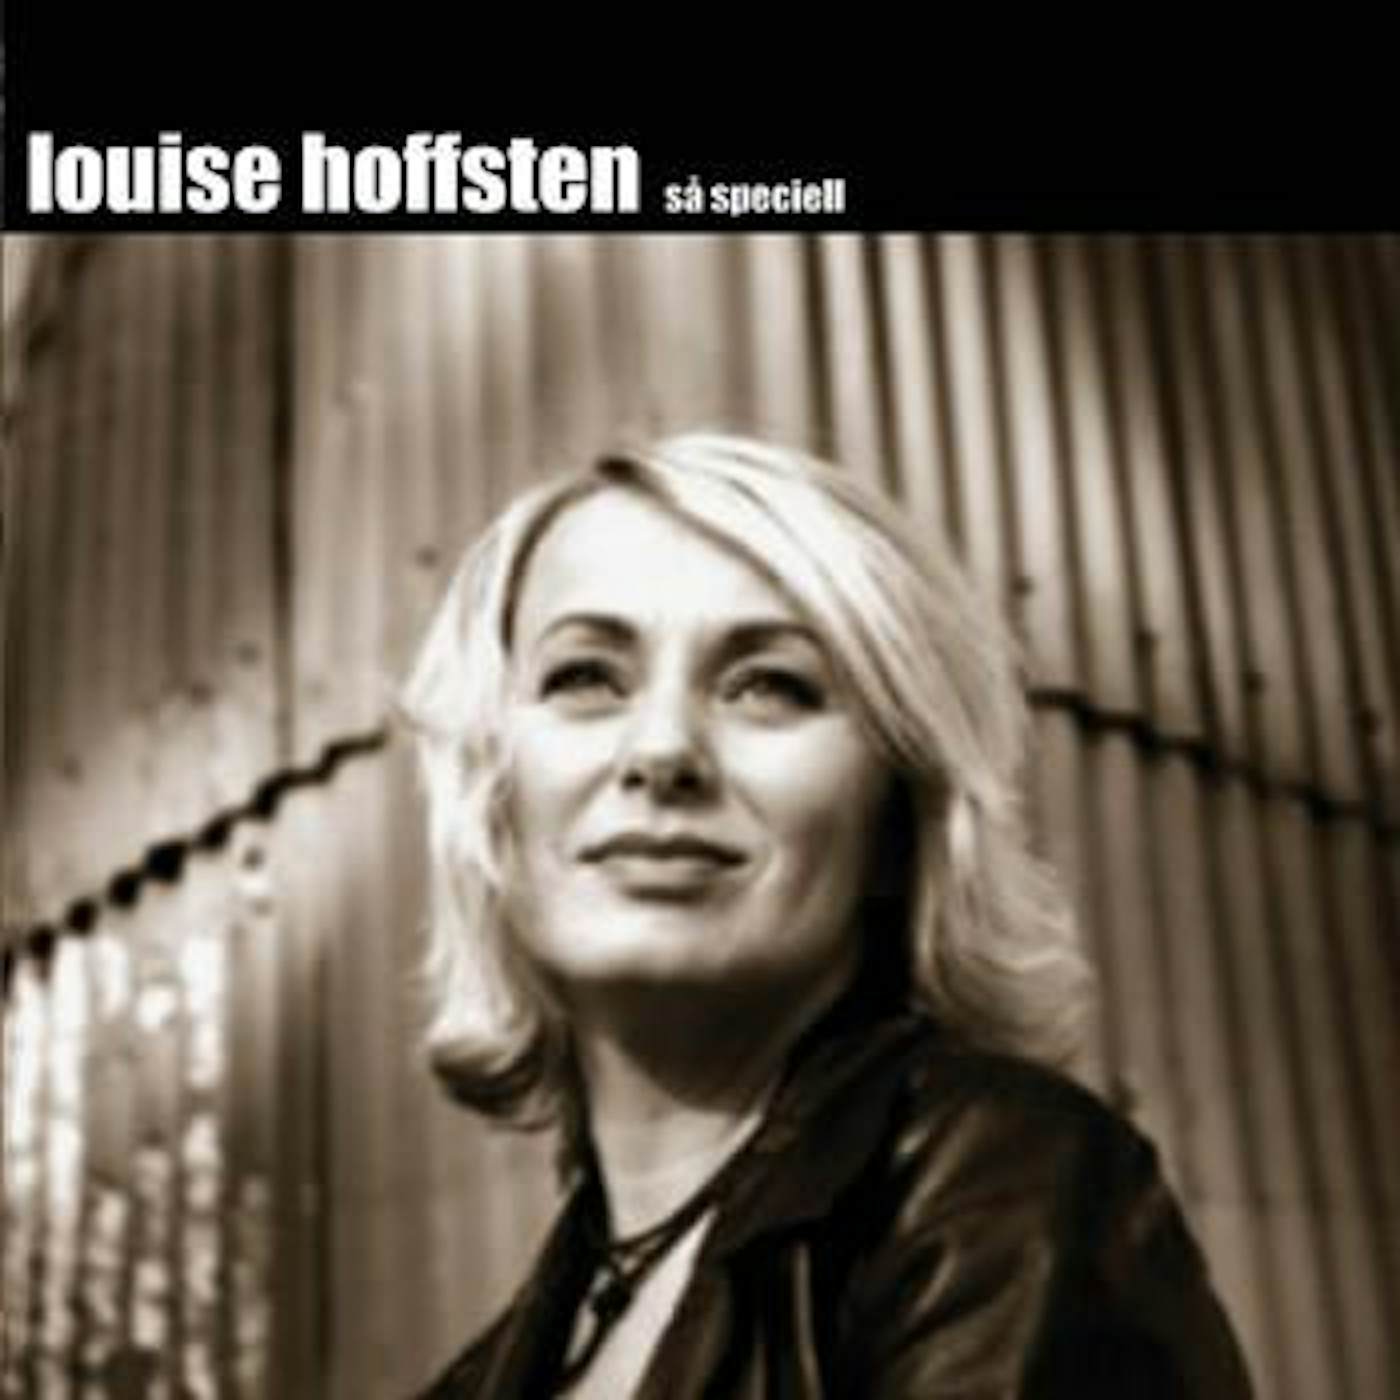 Louise Hoffsten SÅ SPECIELL CD